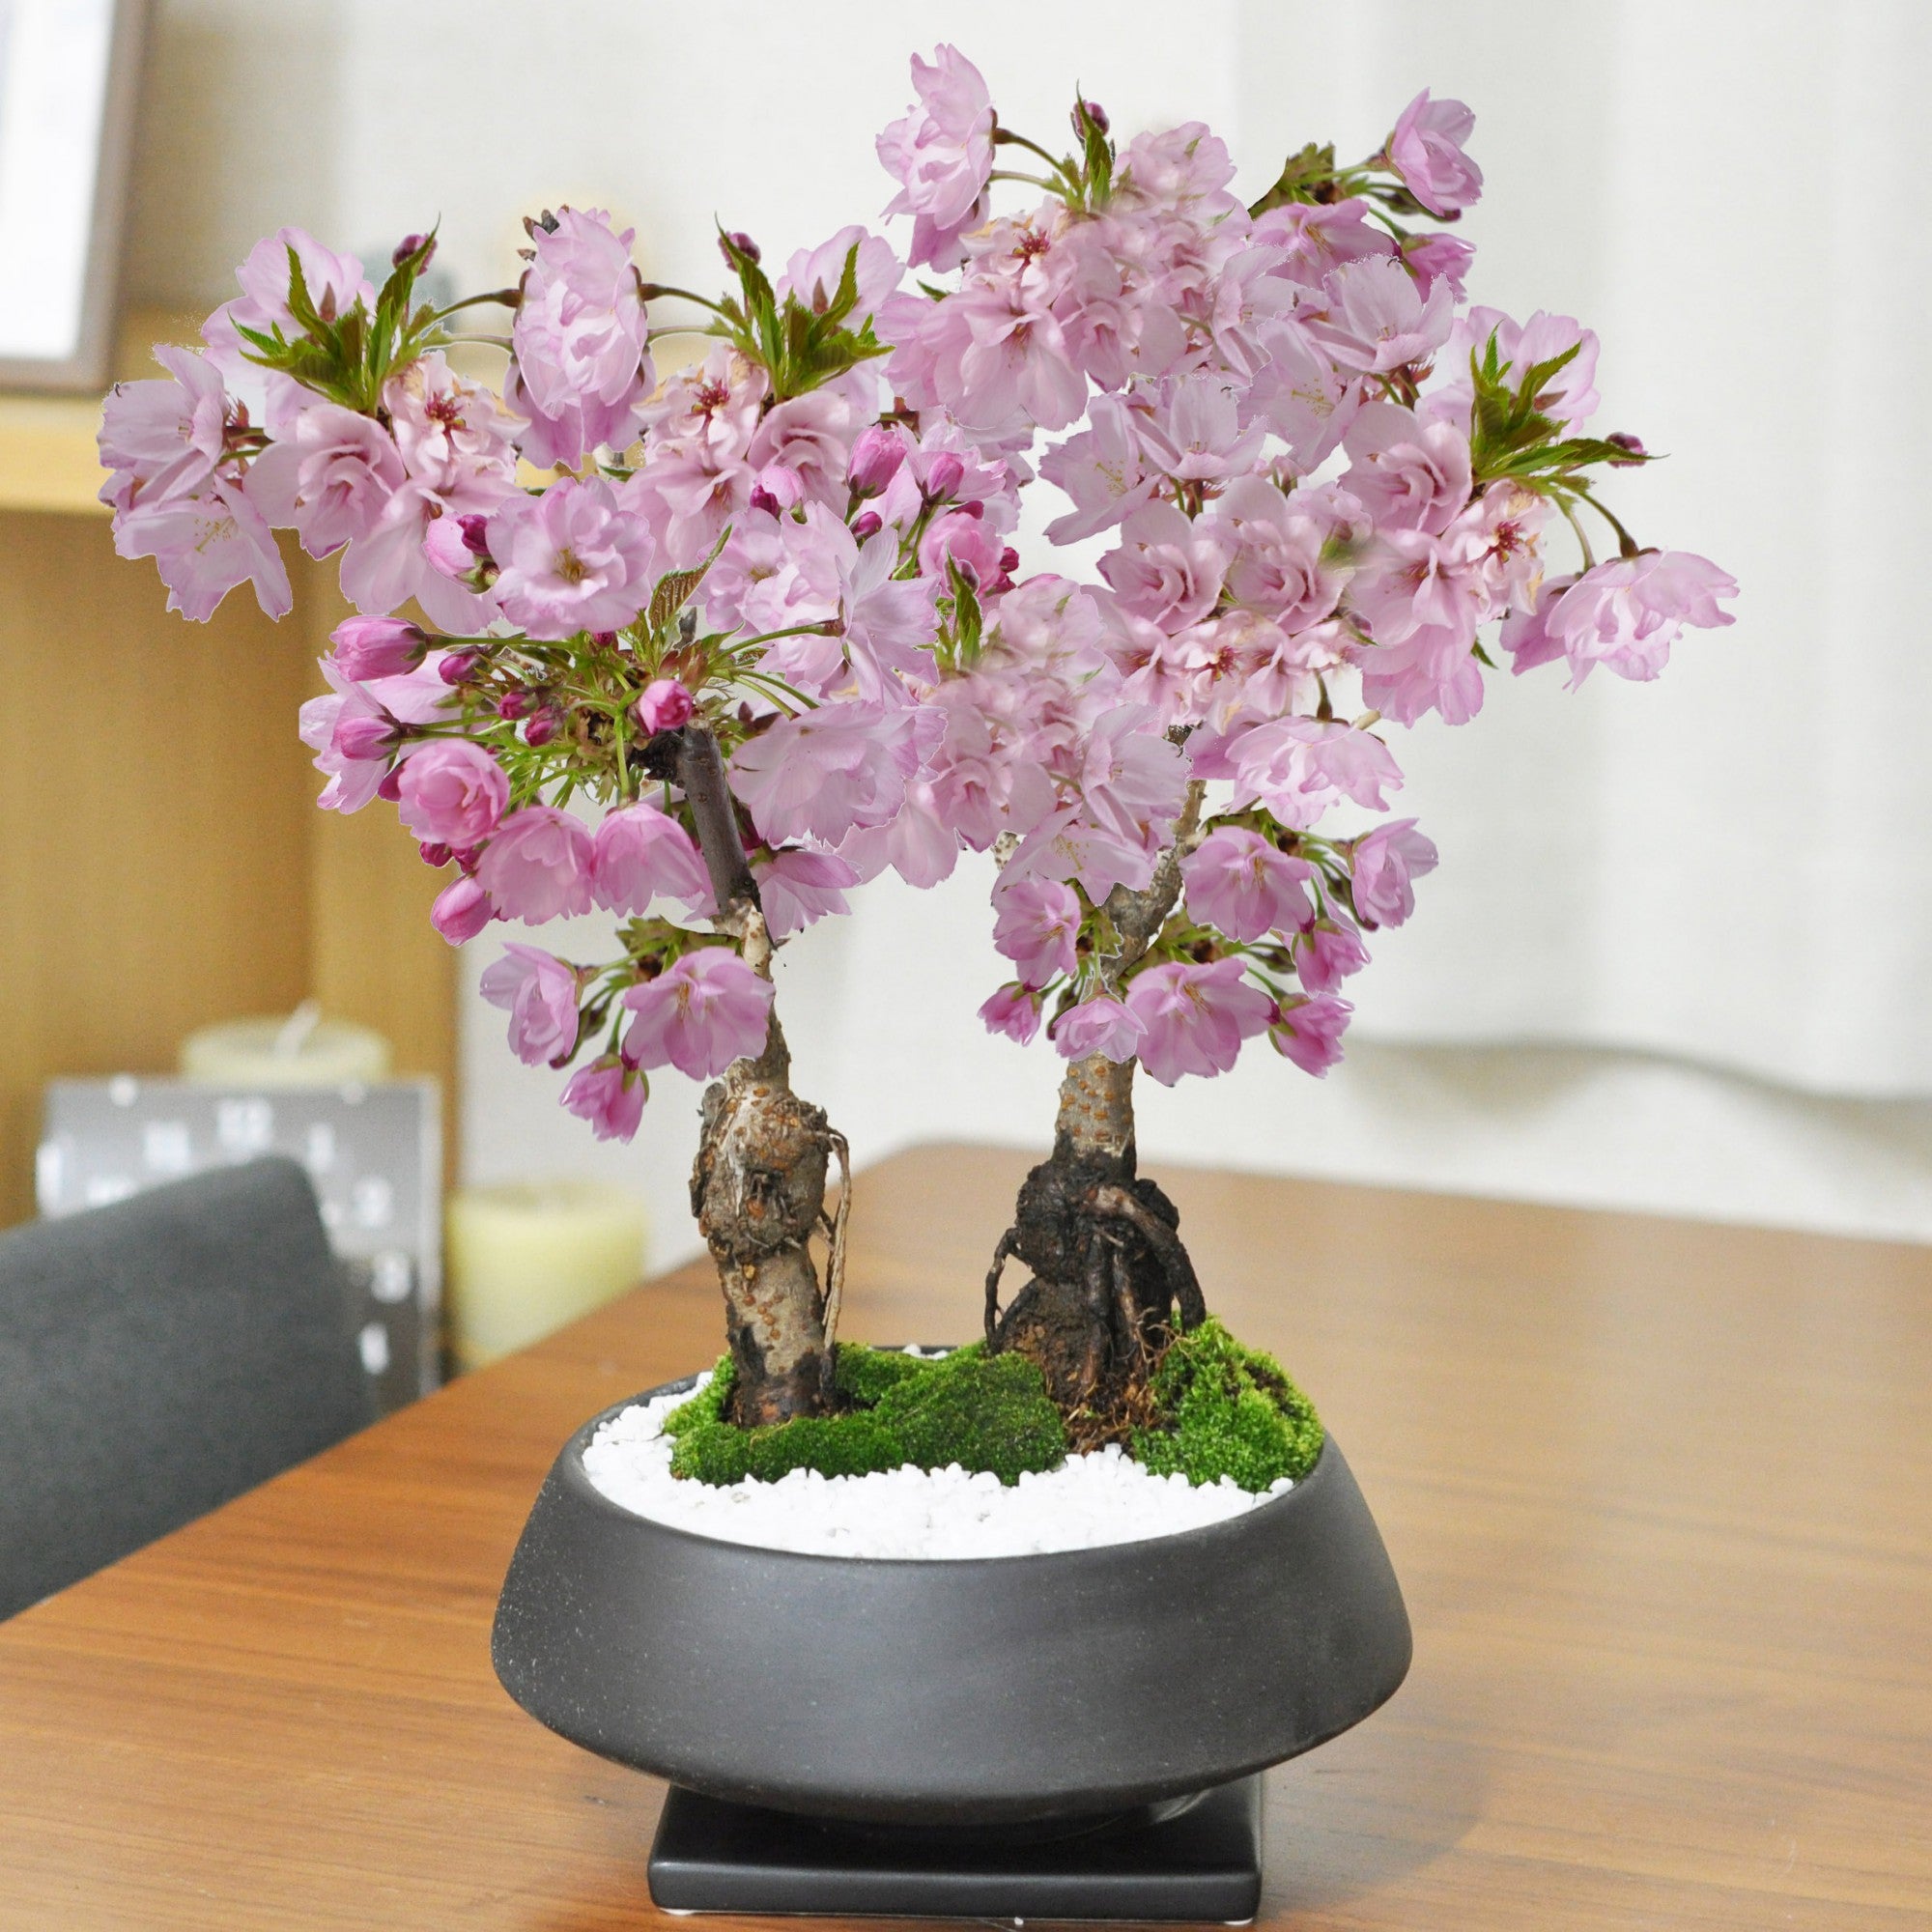 【開花調整】遅咲きの桜盆栽 2本立ち 漆黒浅丸【受皿付き】